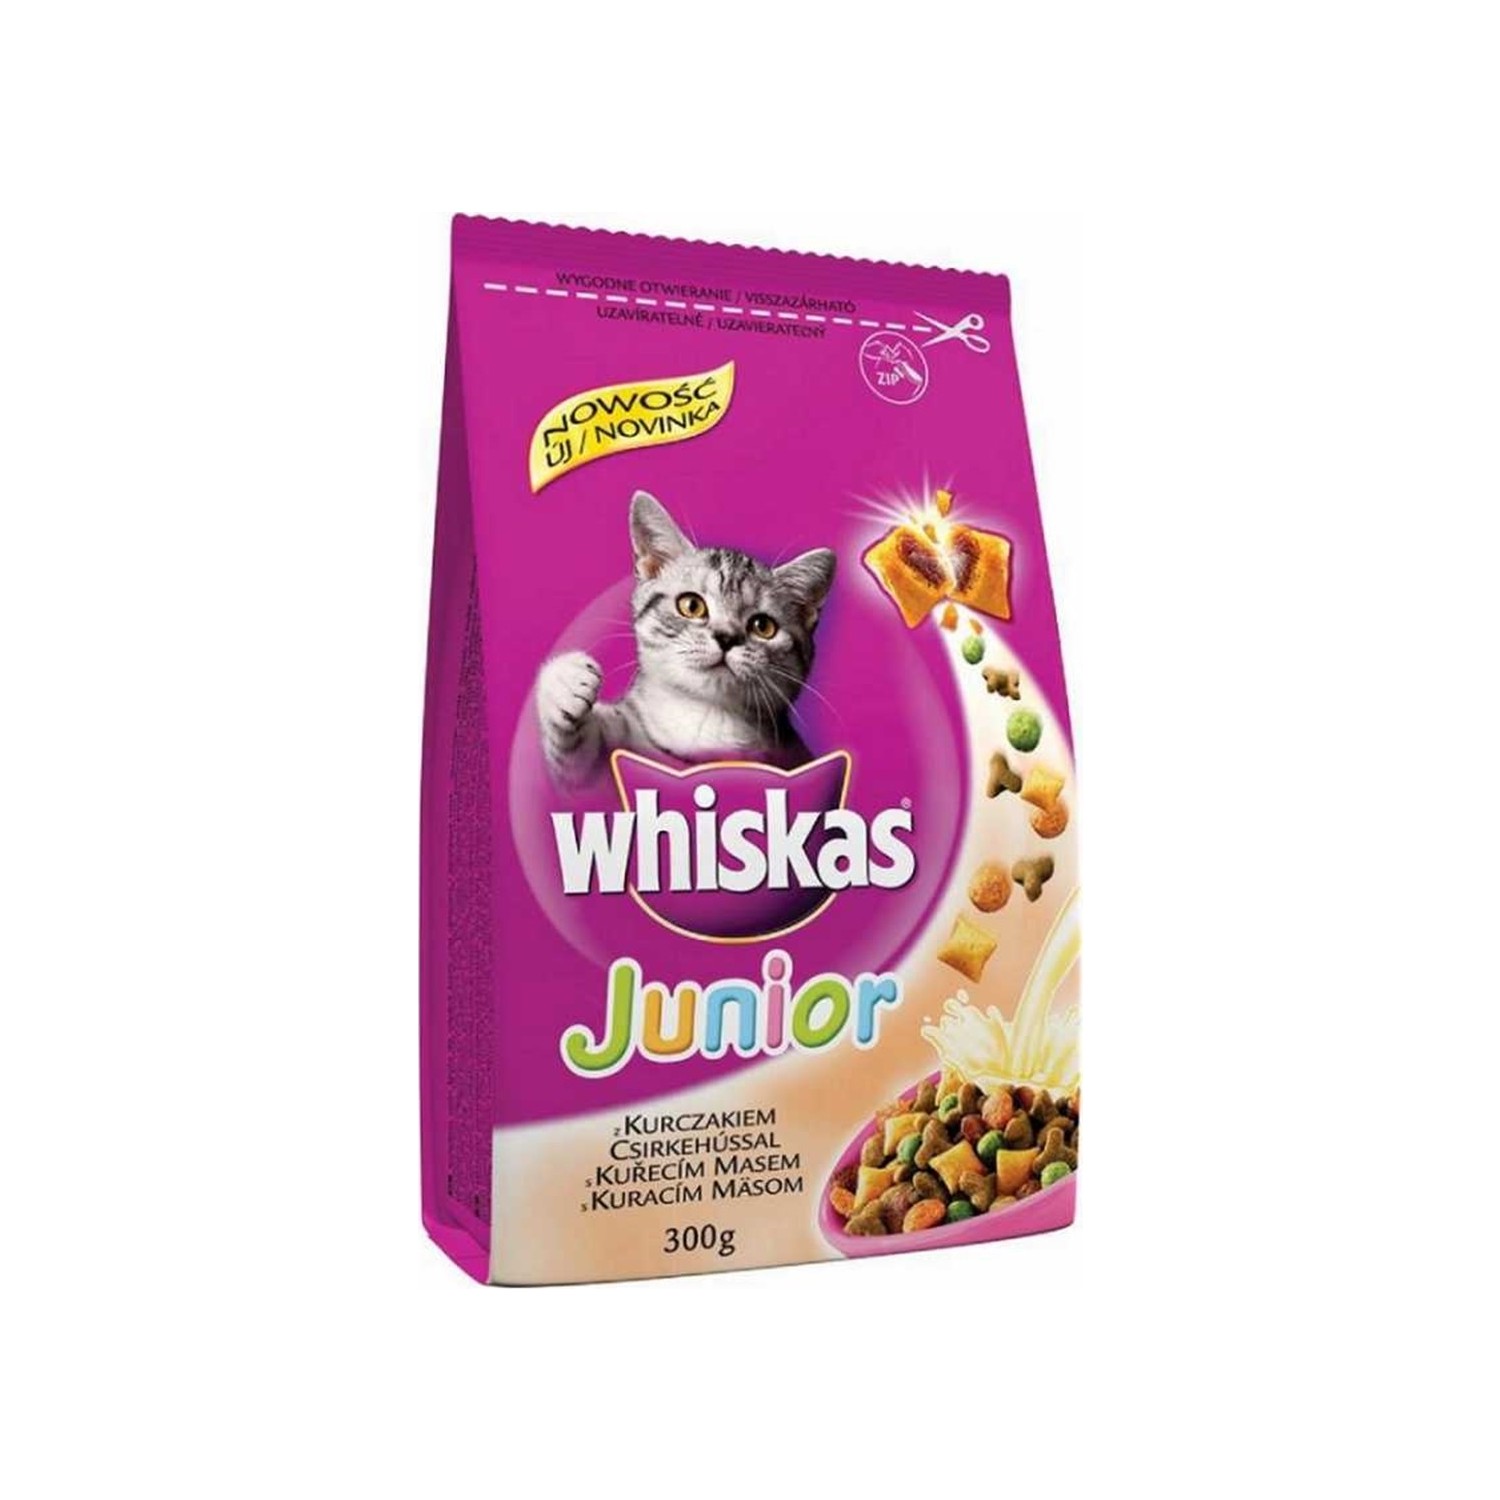 Whiskas Junior Kitten Yavru Tavuklu Kedi Maması 300 gr Fiyatı